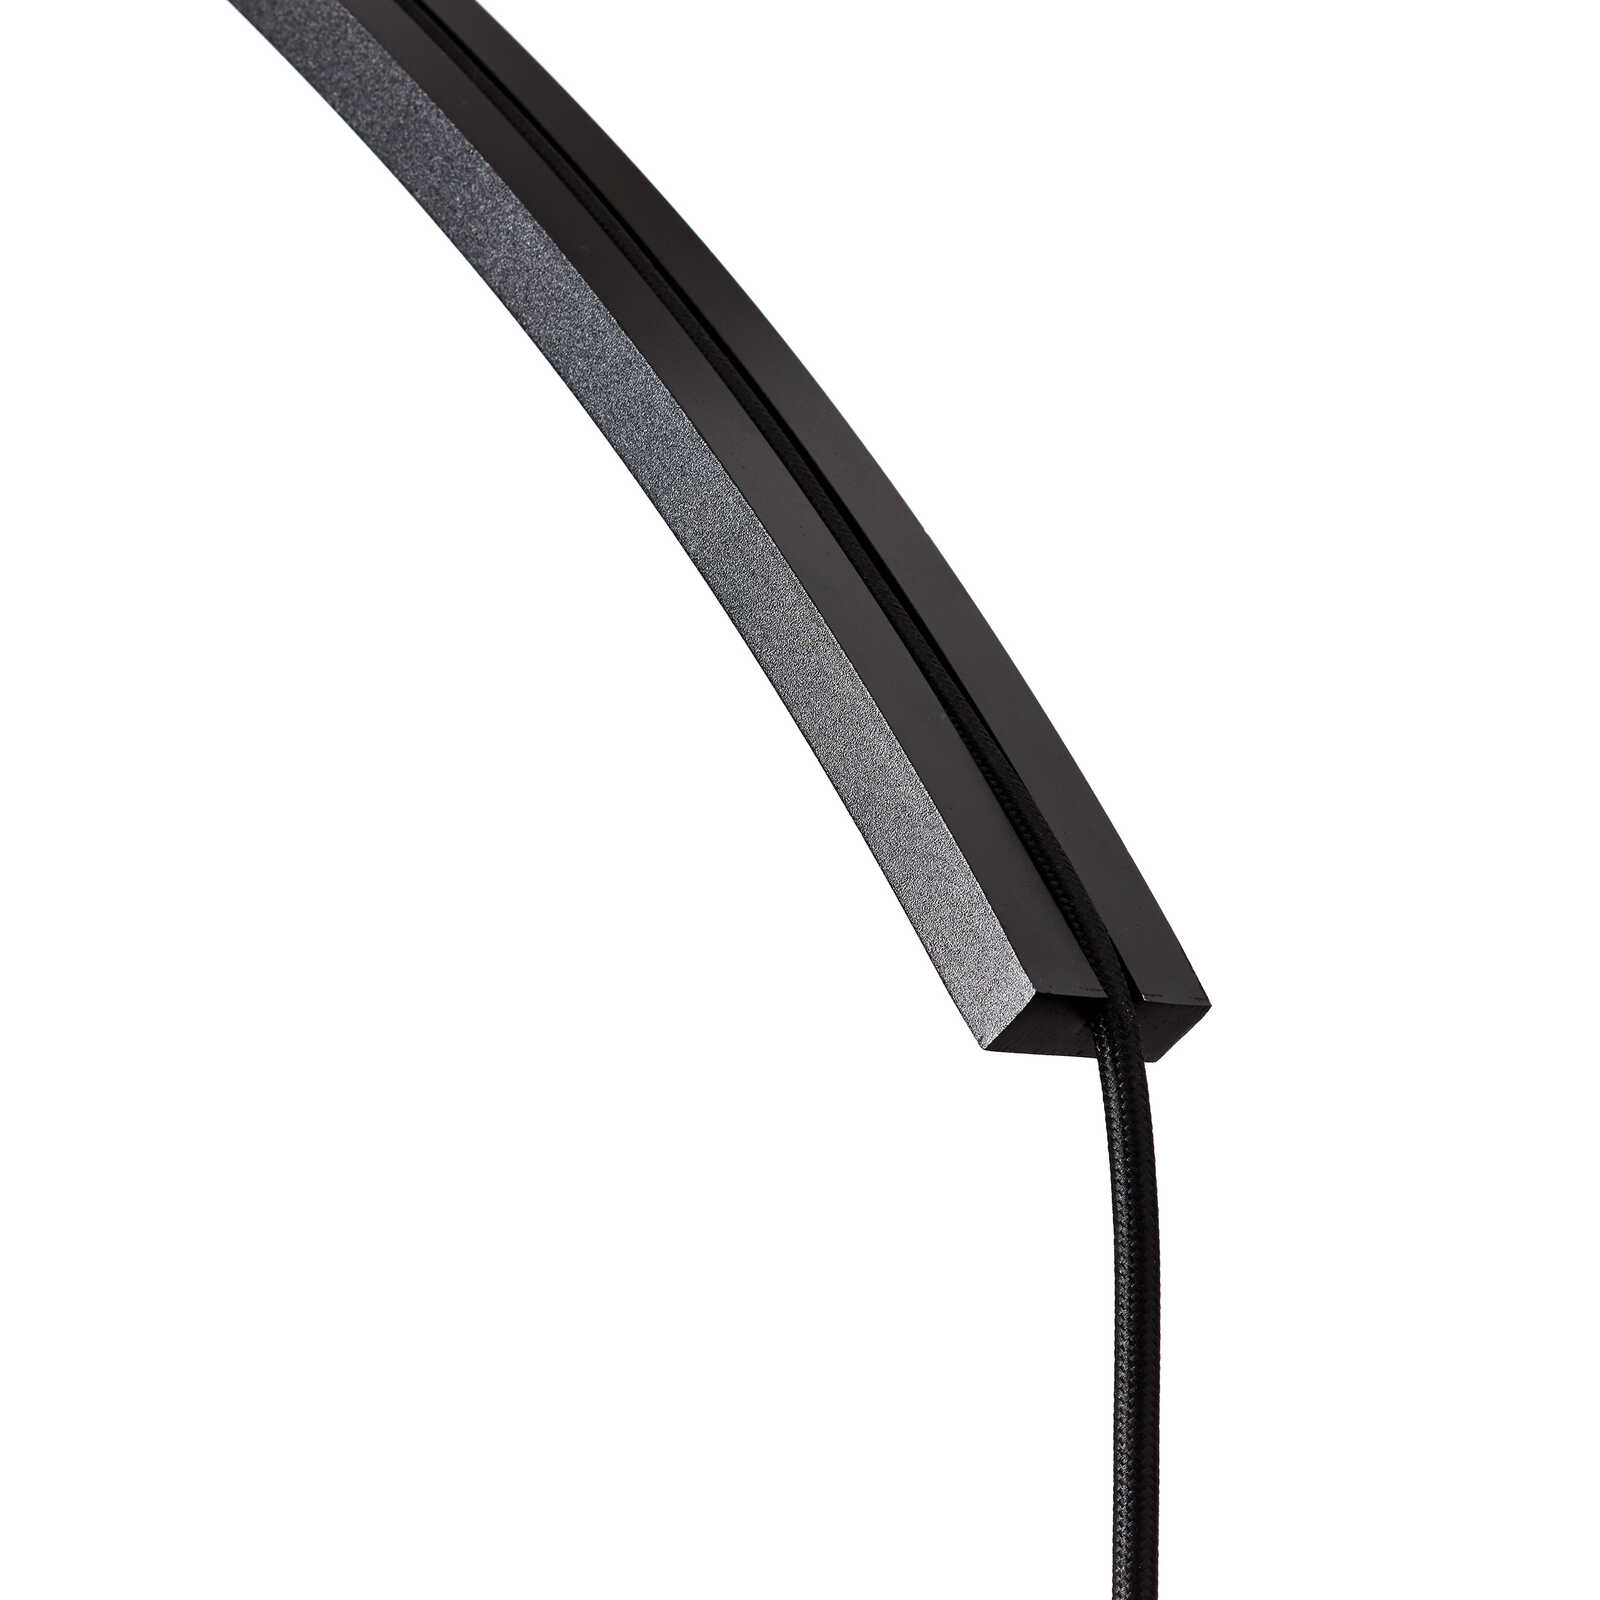             Textiel hanglamp - Enno 1 - Zwart
        